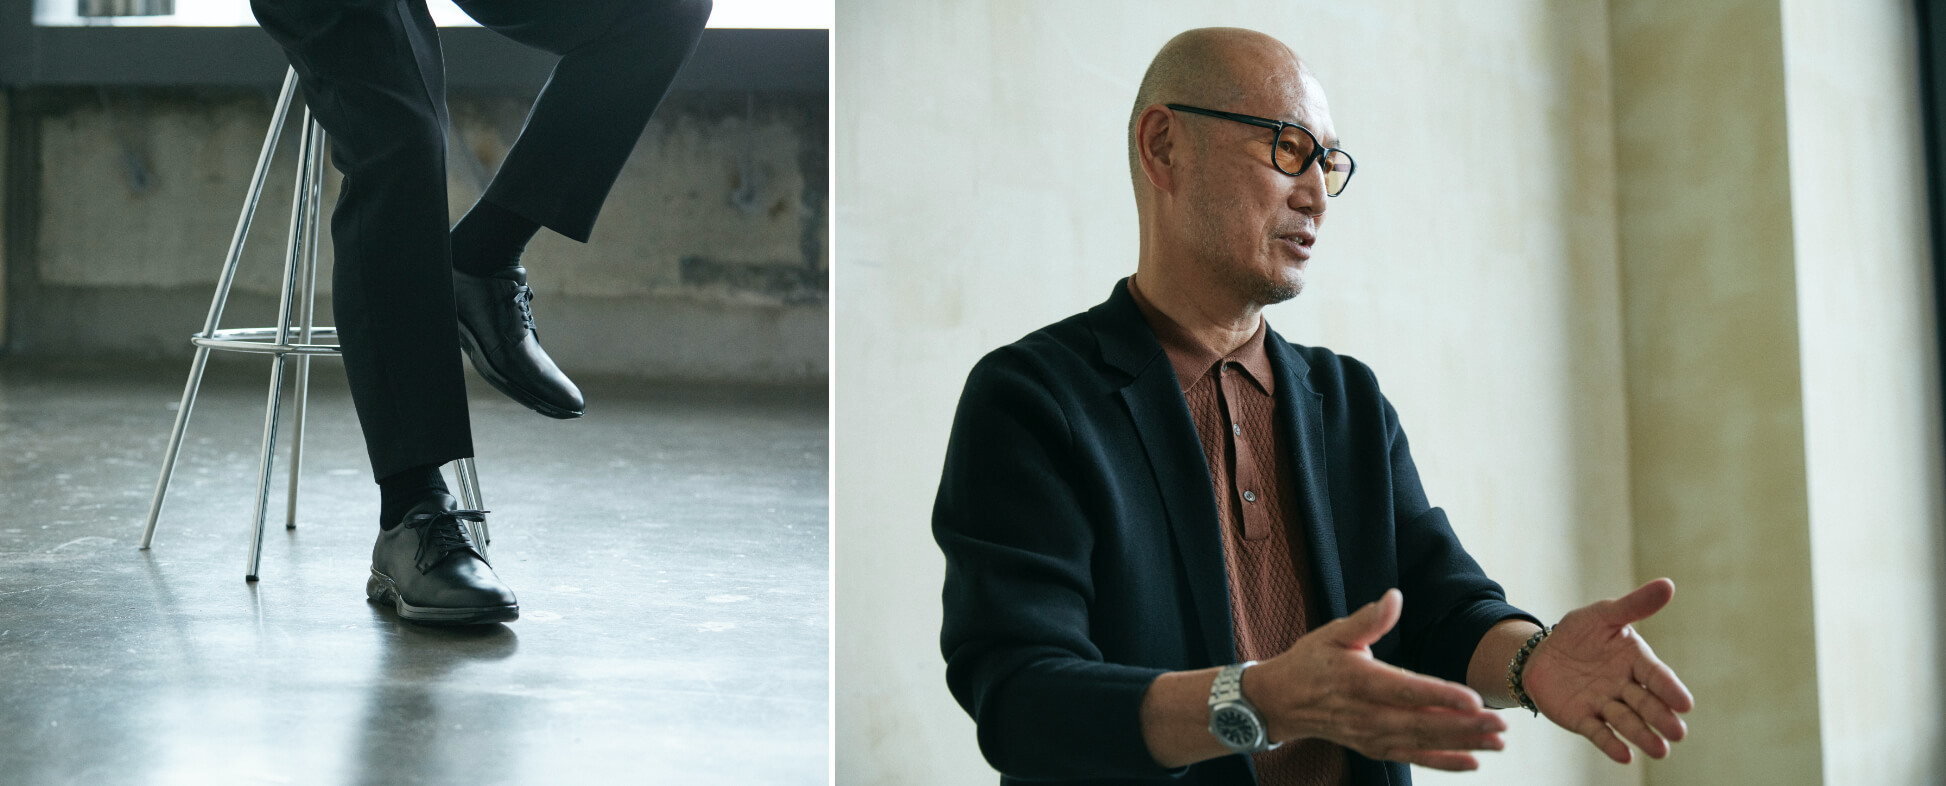 「LEAD’S INTERVIEW」 ファッションディレクター・森岡弘氏が語る、LEADを通して見えてくるビジネススタイルの未来